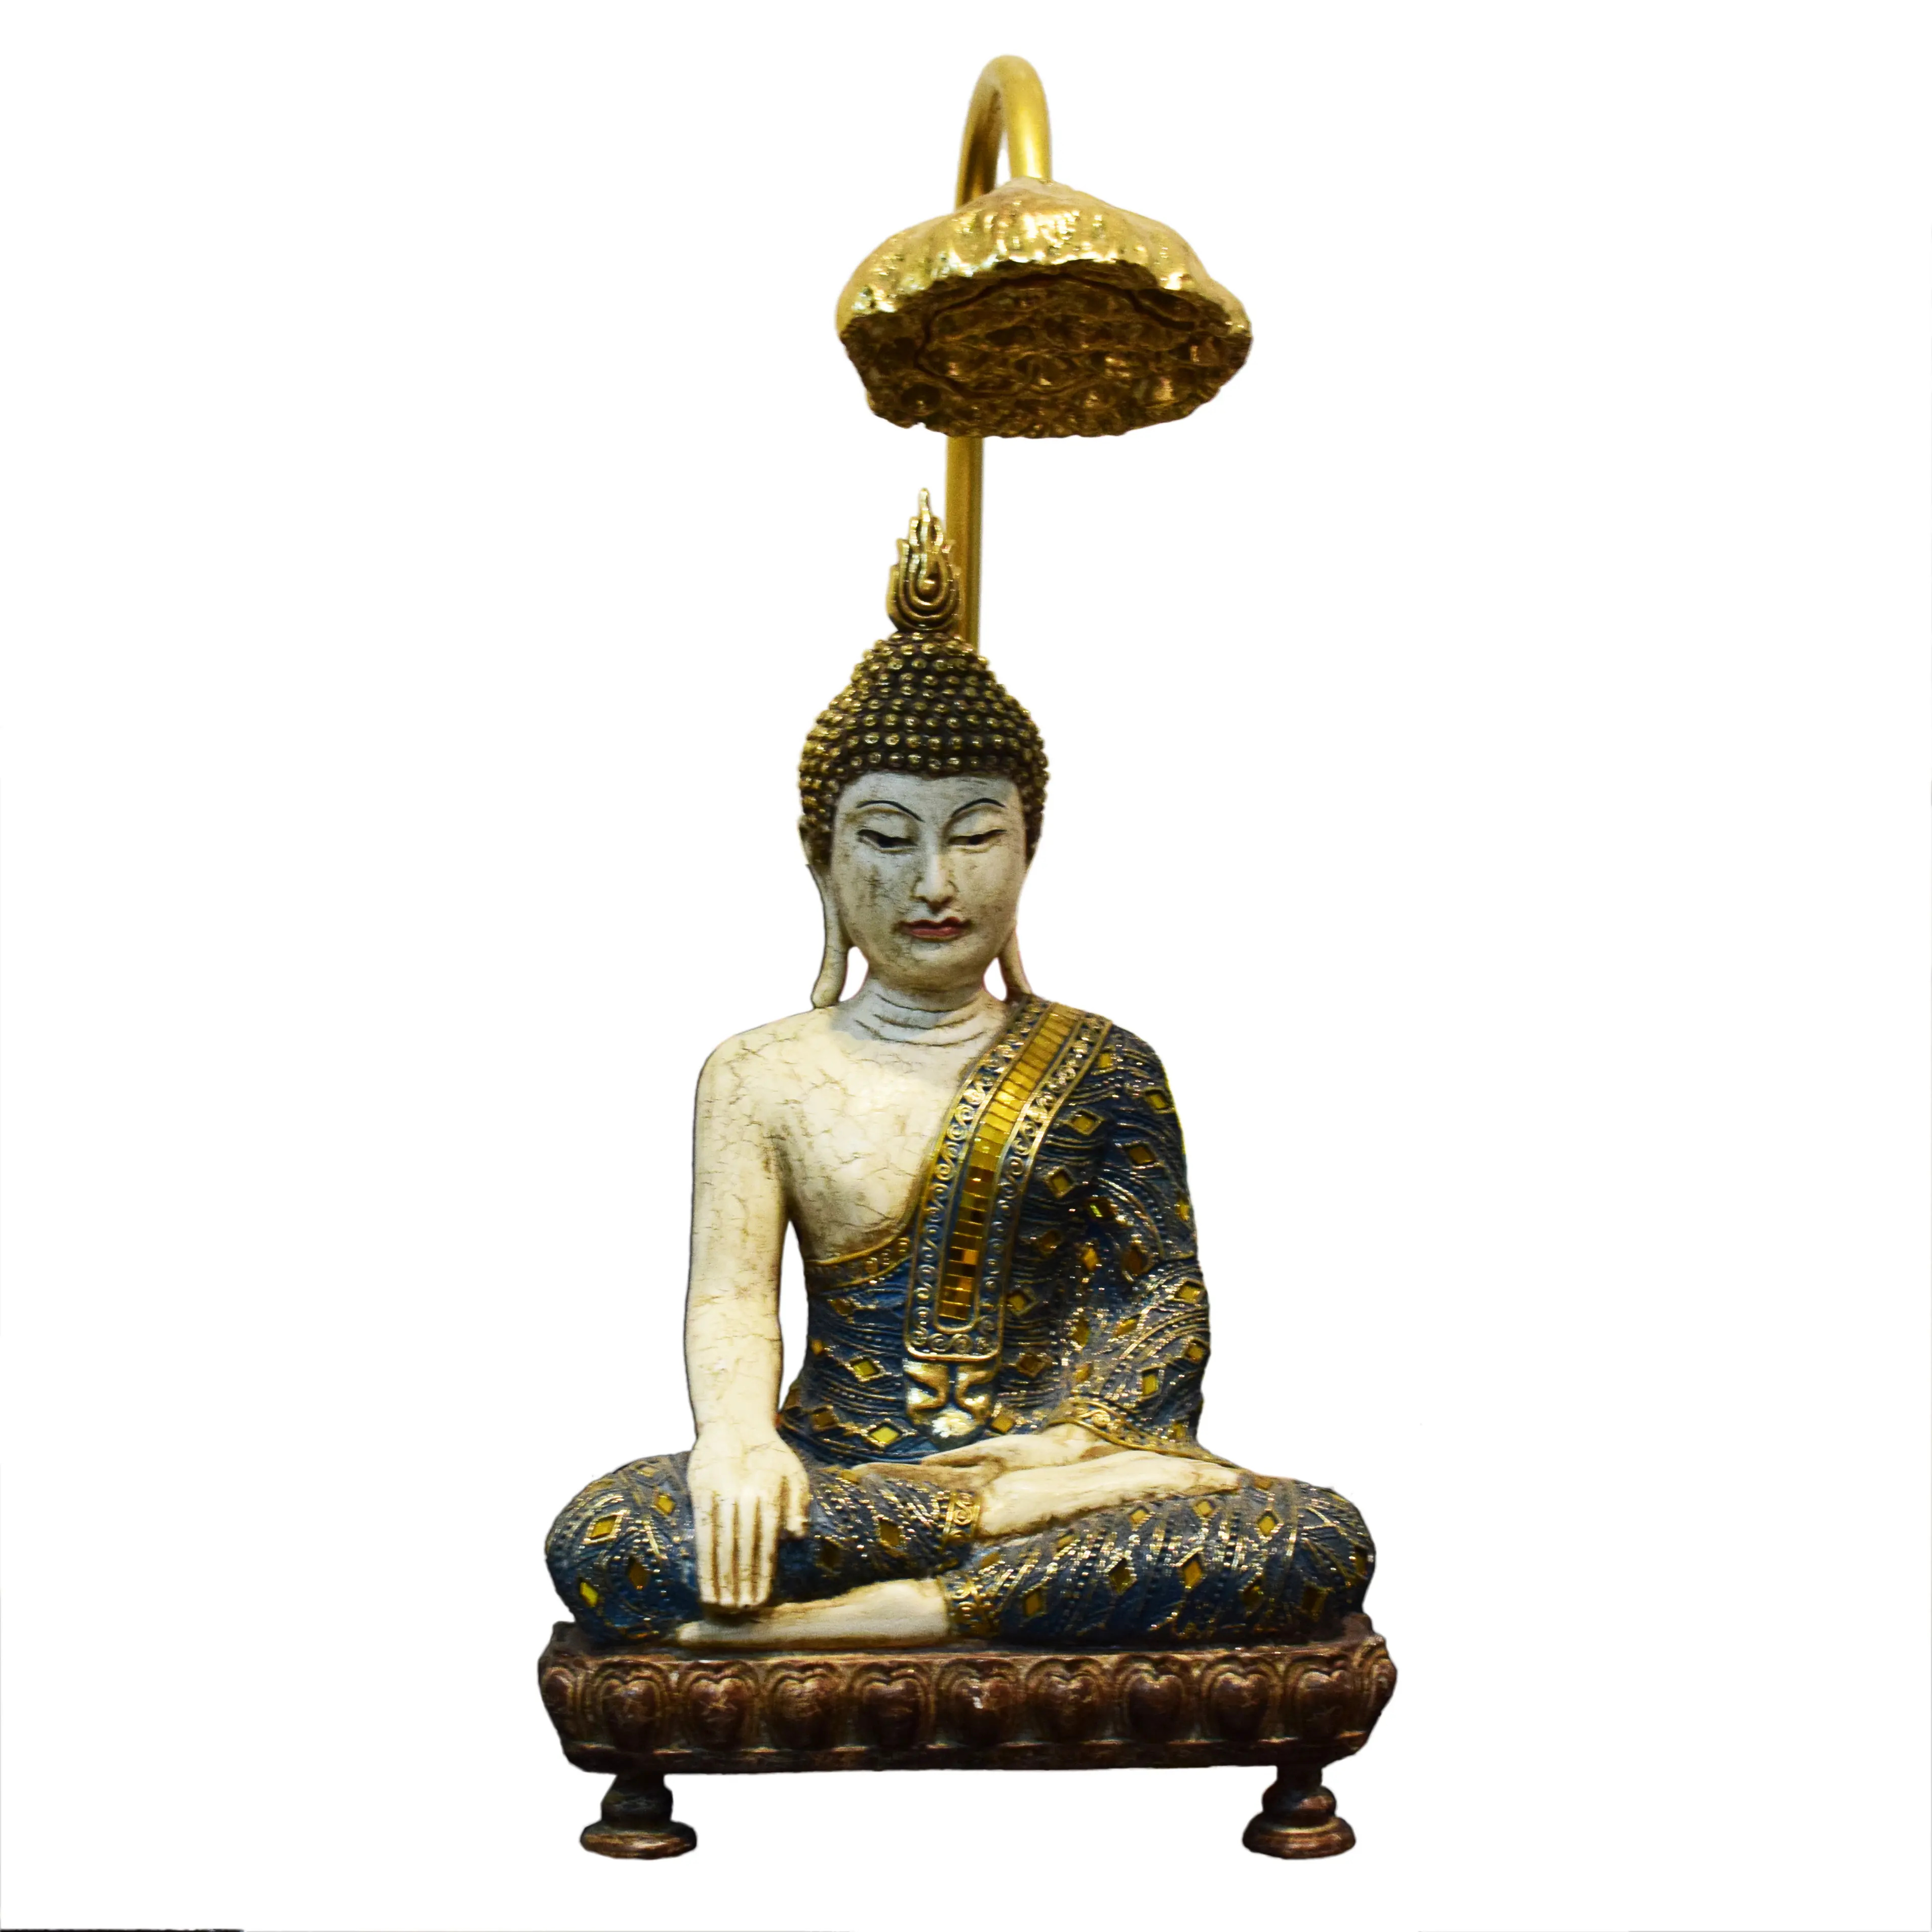 Декор из индуии и Восточной Азии, религиозные поделки, сидящая статуэтка Будды, статуэтка с лампой лотоса